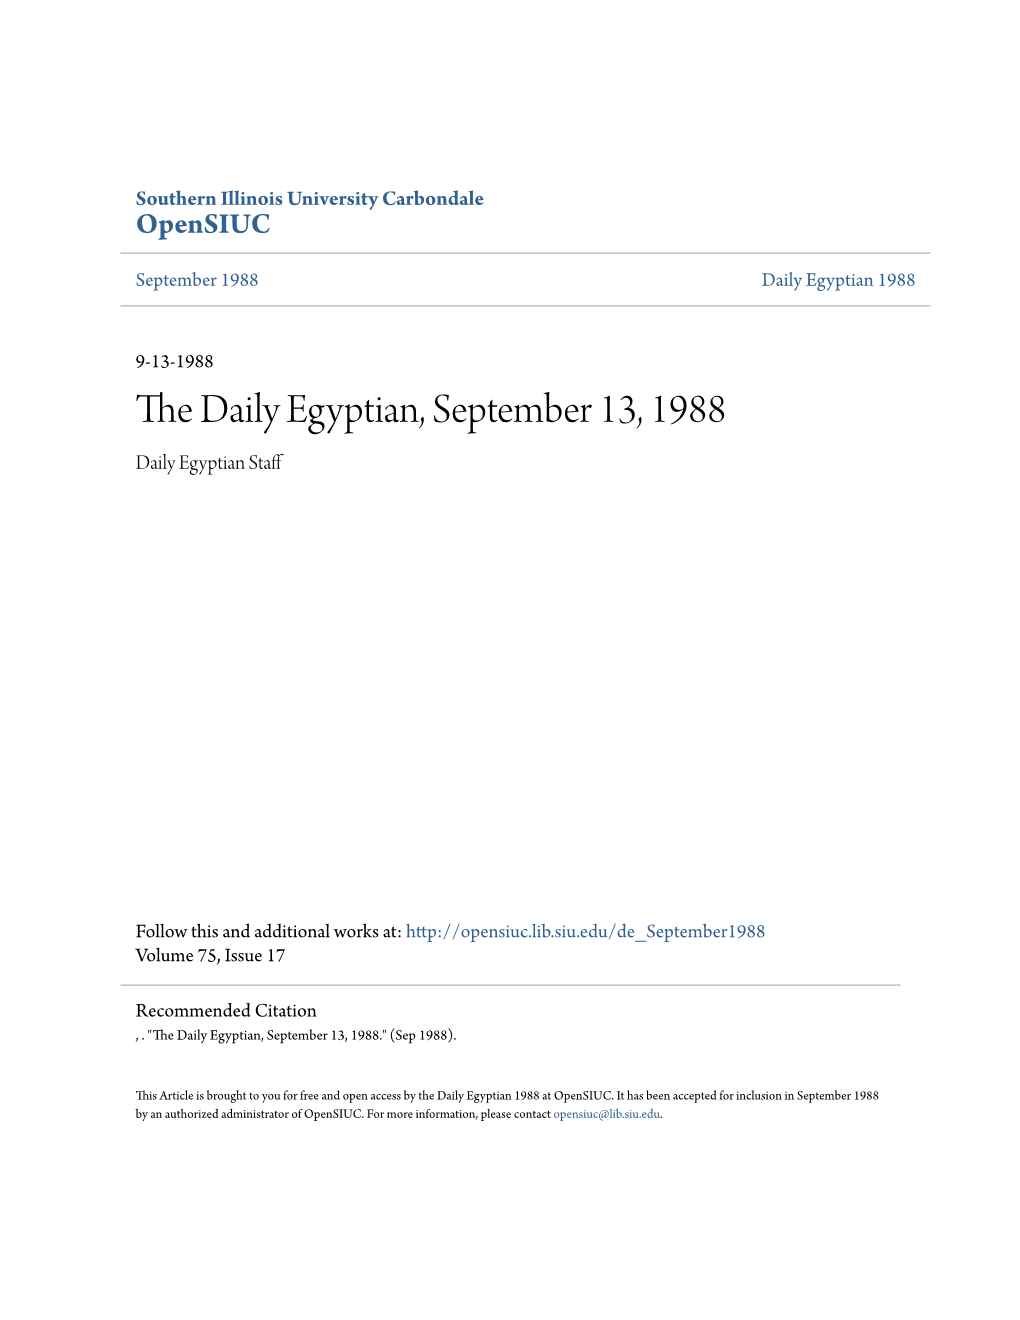 The Daily Egyptian, September 13, 1988